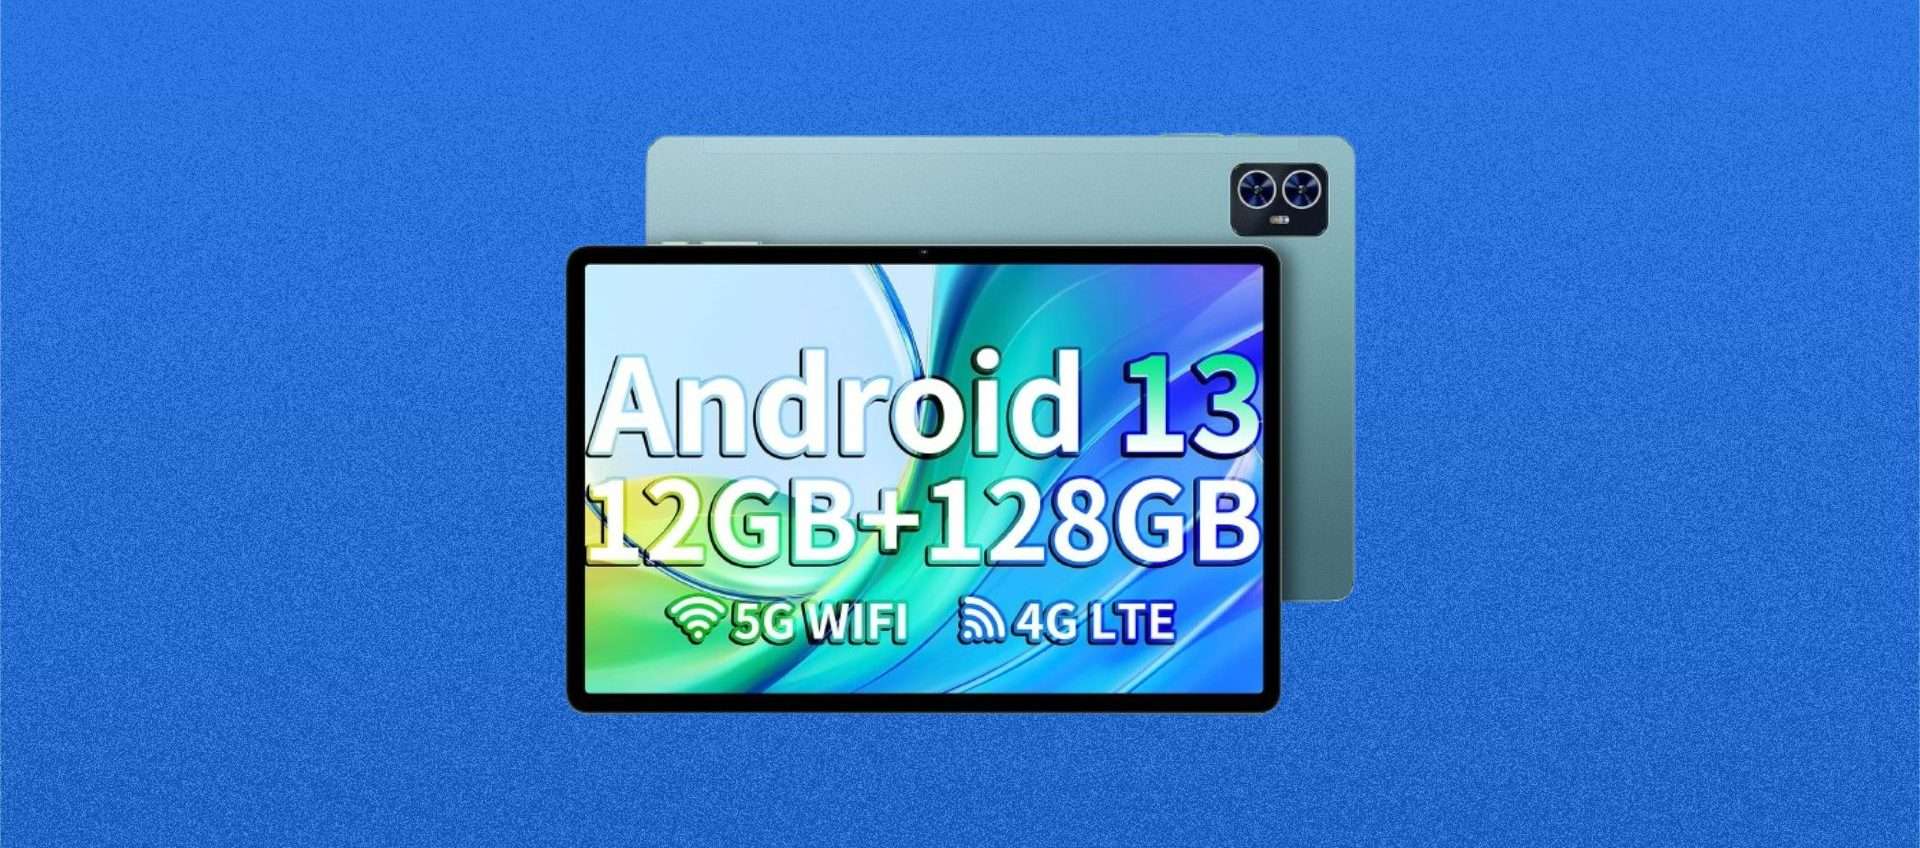 Tablet Android 13 a soli 104,99€?! Sì, con questa SUPER offerta di Amazon